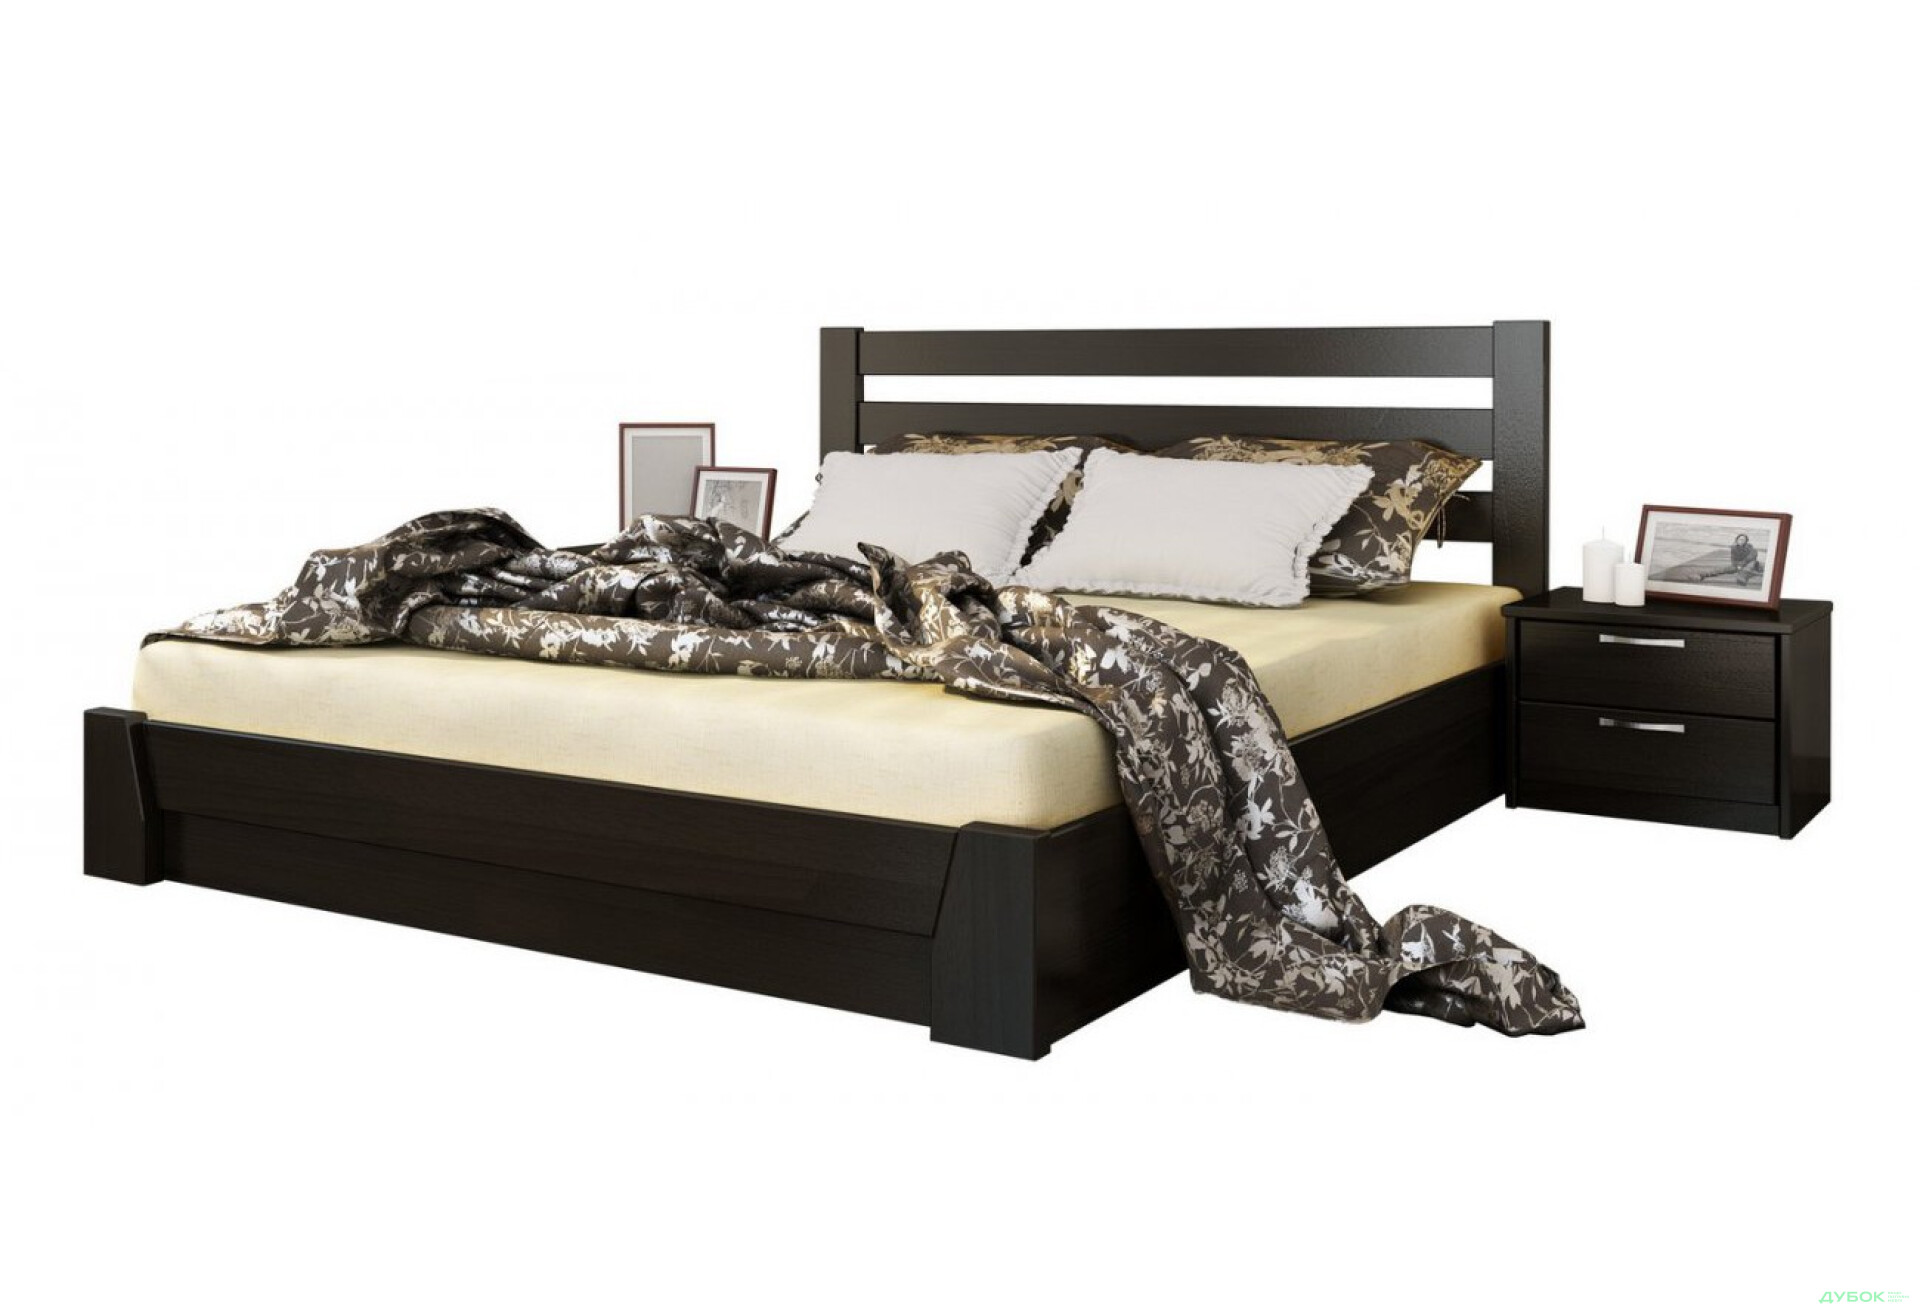 Фото 5 - Серія Тесса ліжко Селена 160х200 підйомне (масив) Естелла